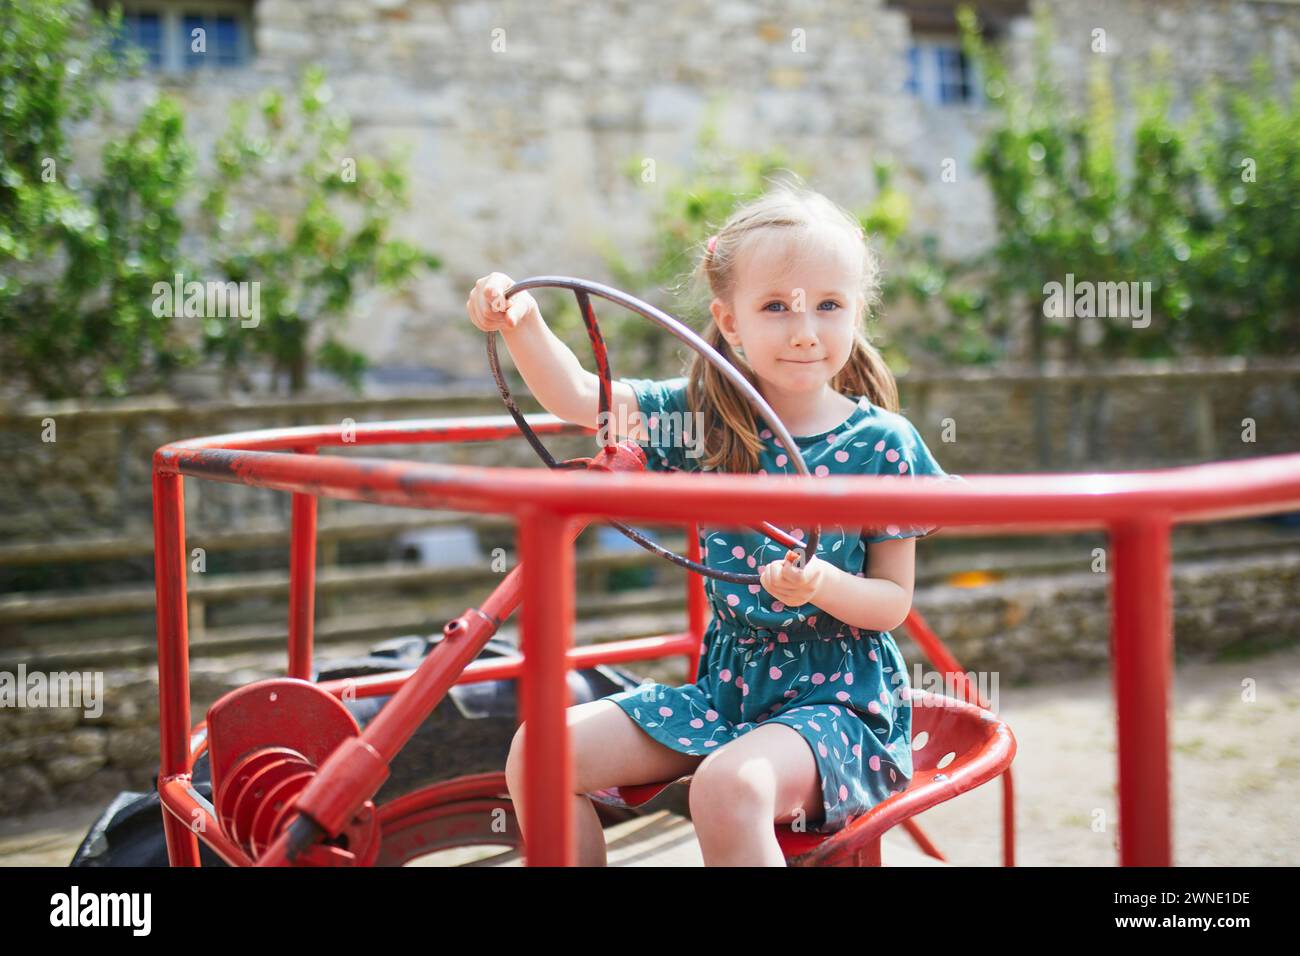 Adorable fille d'enfant d'âge préscolaire jouant sur le vieux tracteur rouge sur la ferme Gally près de Paris, France. Activités estivales en plein air pour les enfants Banque D'Images